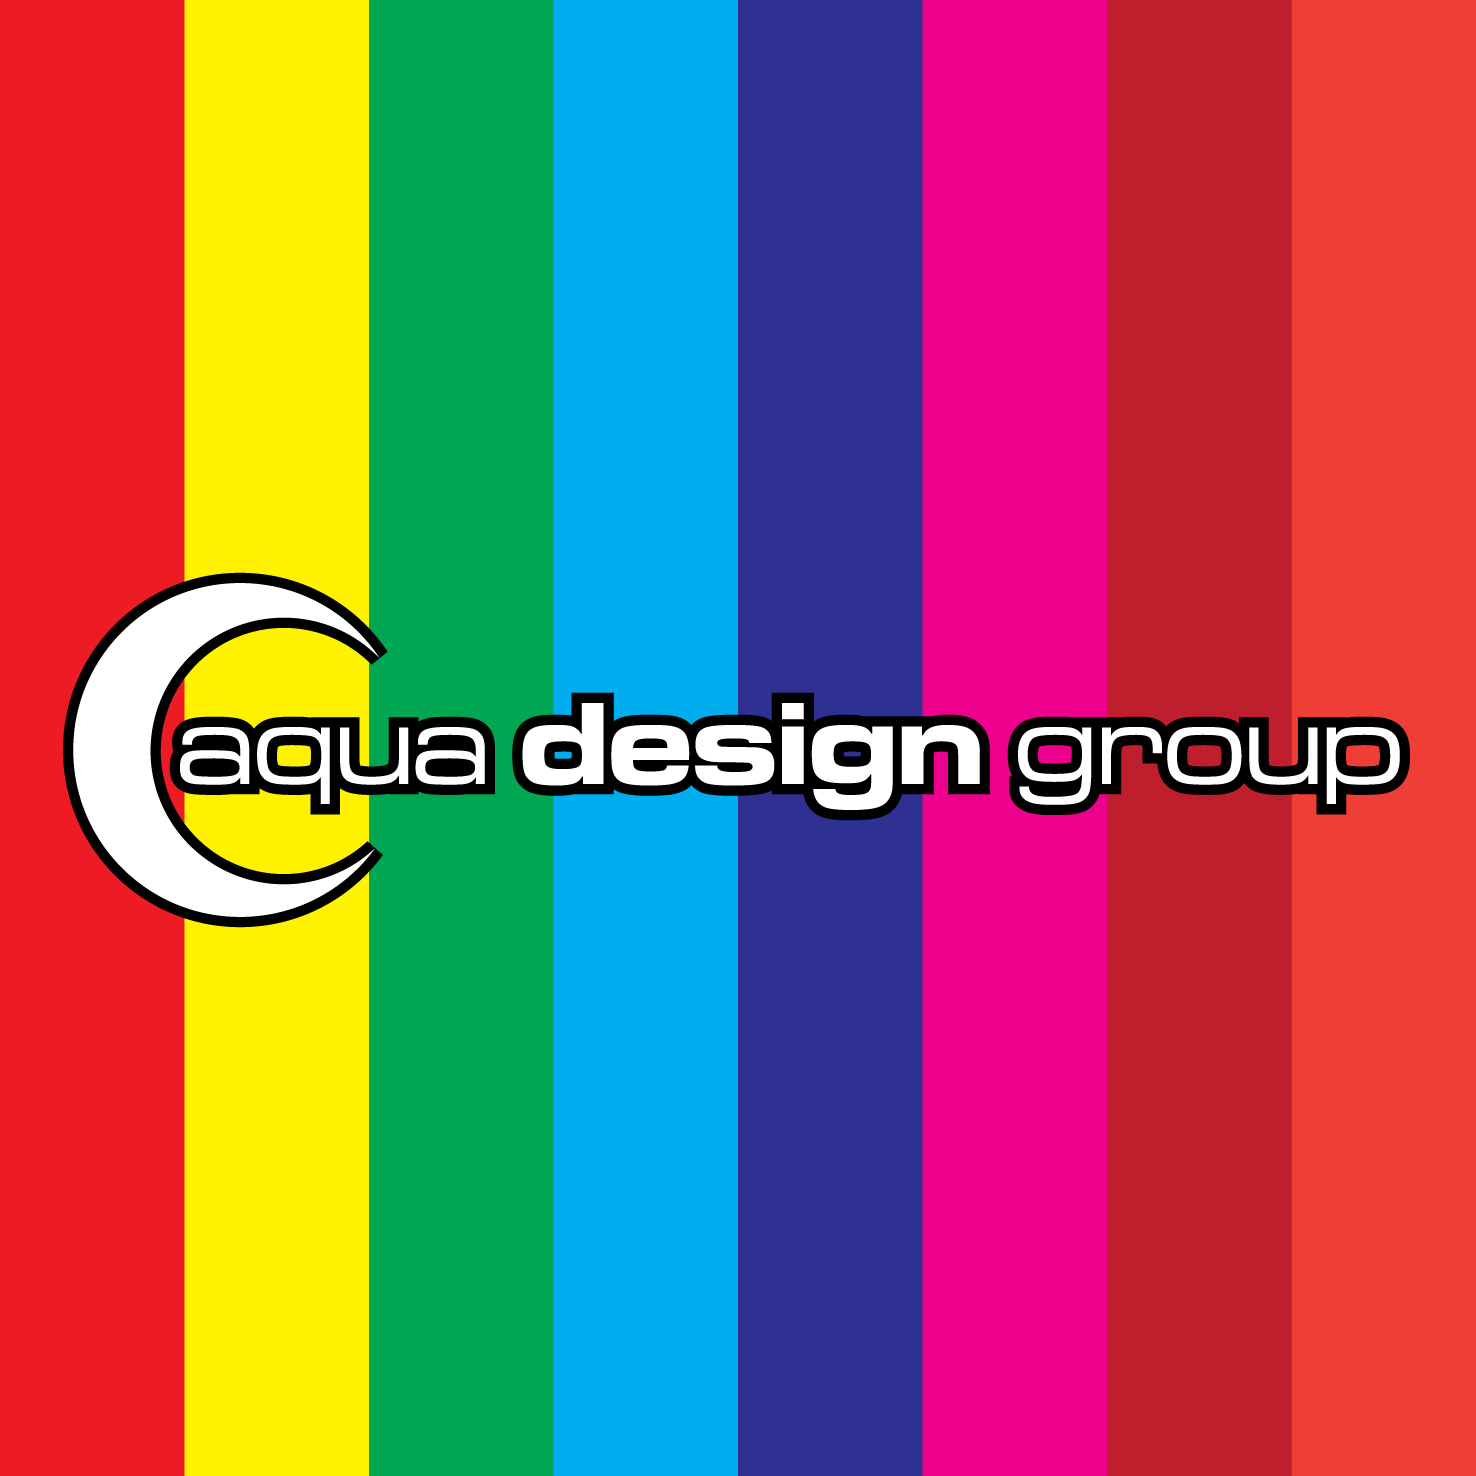 Rainbow Square Logo - Aqua Design Group Logo Square Design Group